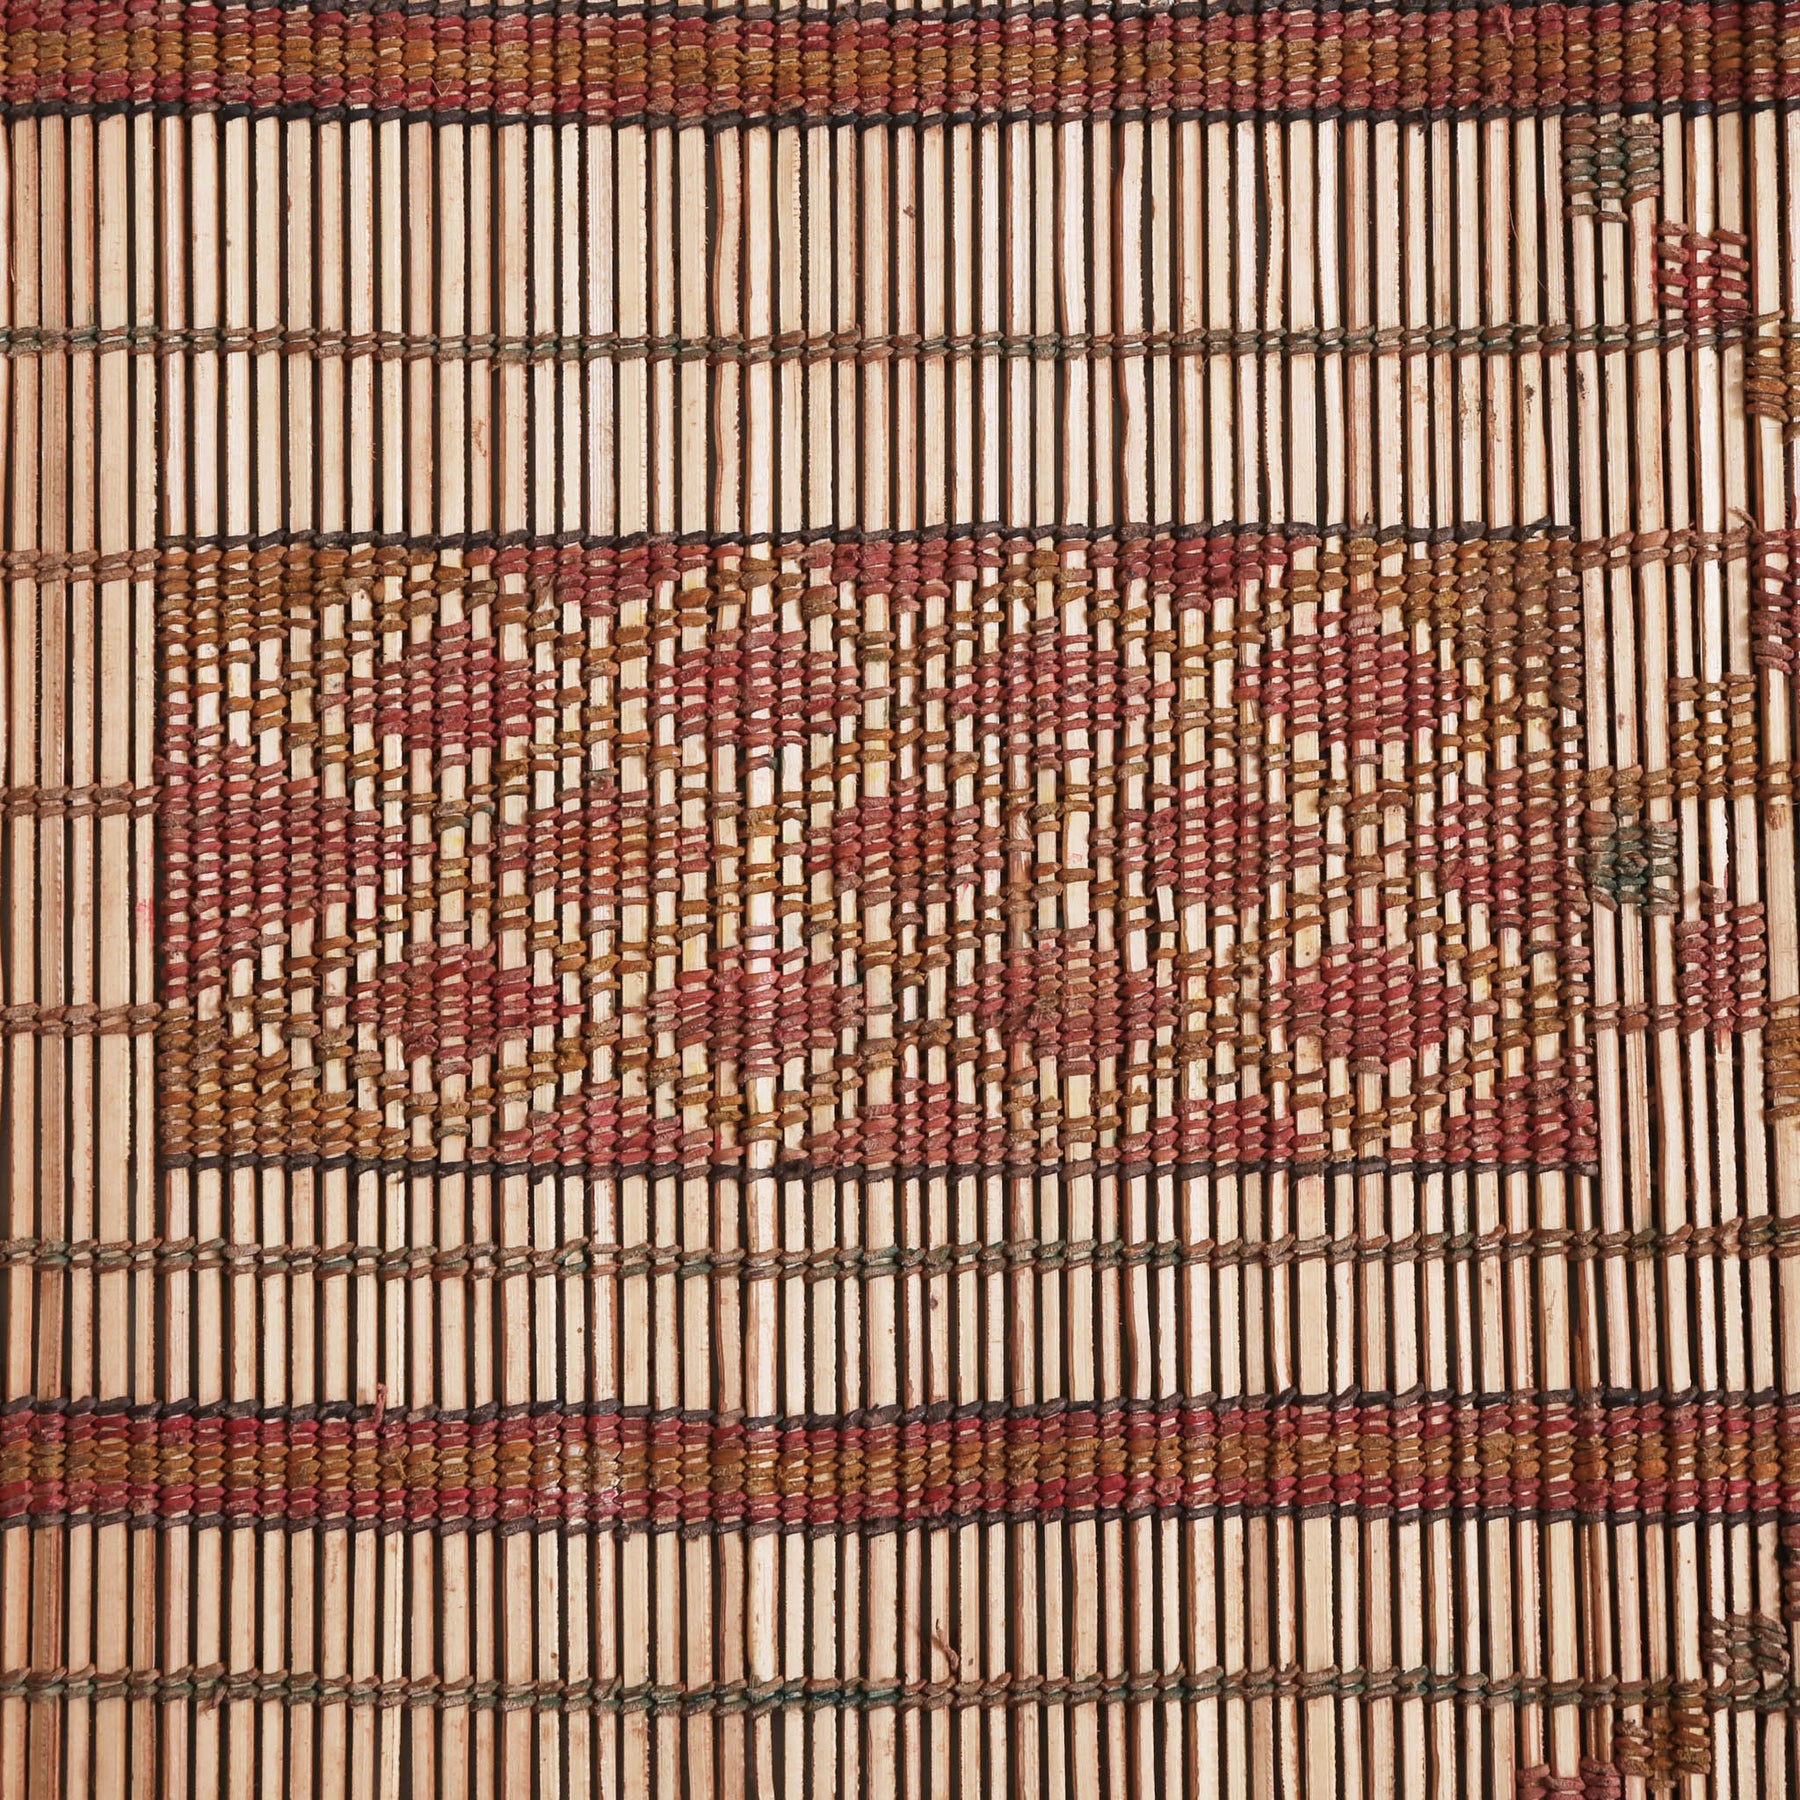 dettaglio di un simbolo lavorato con fili di cuoio ocra e rosso